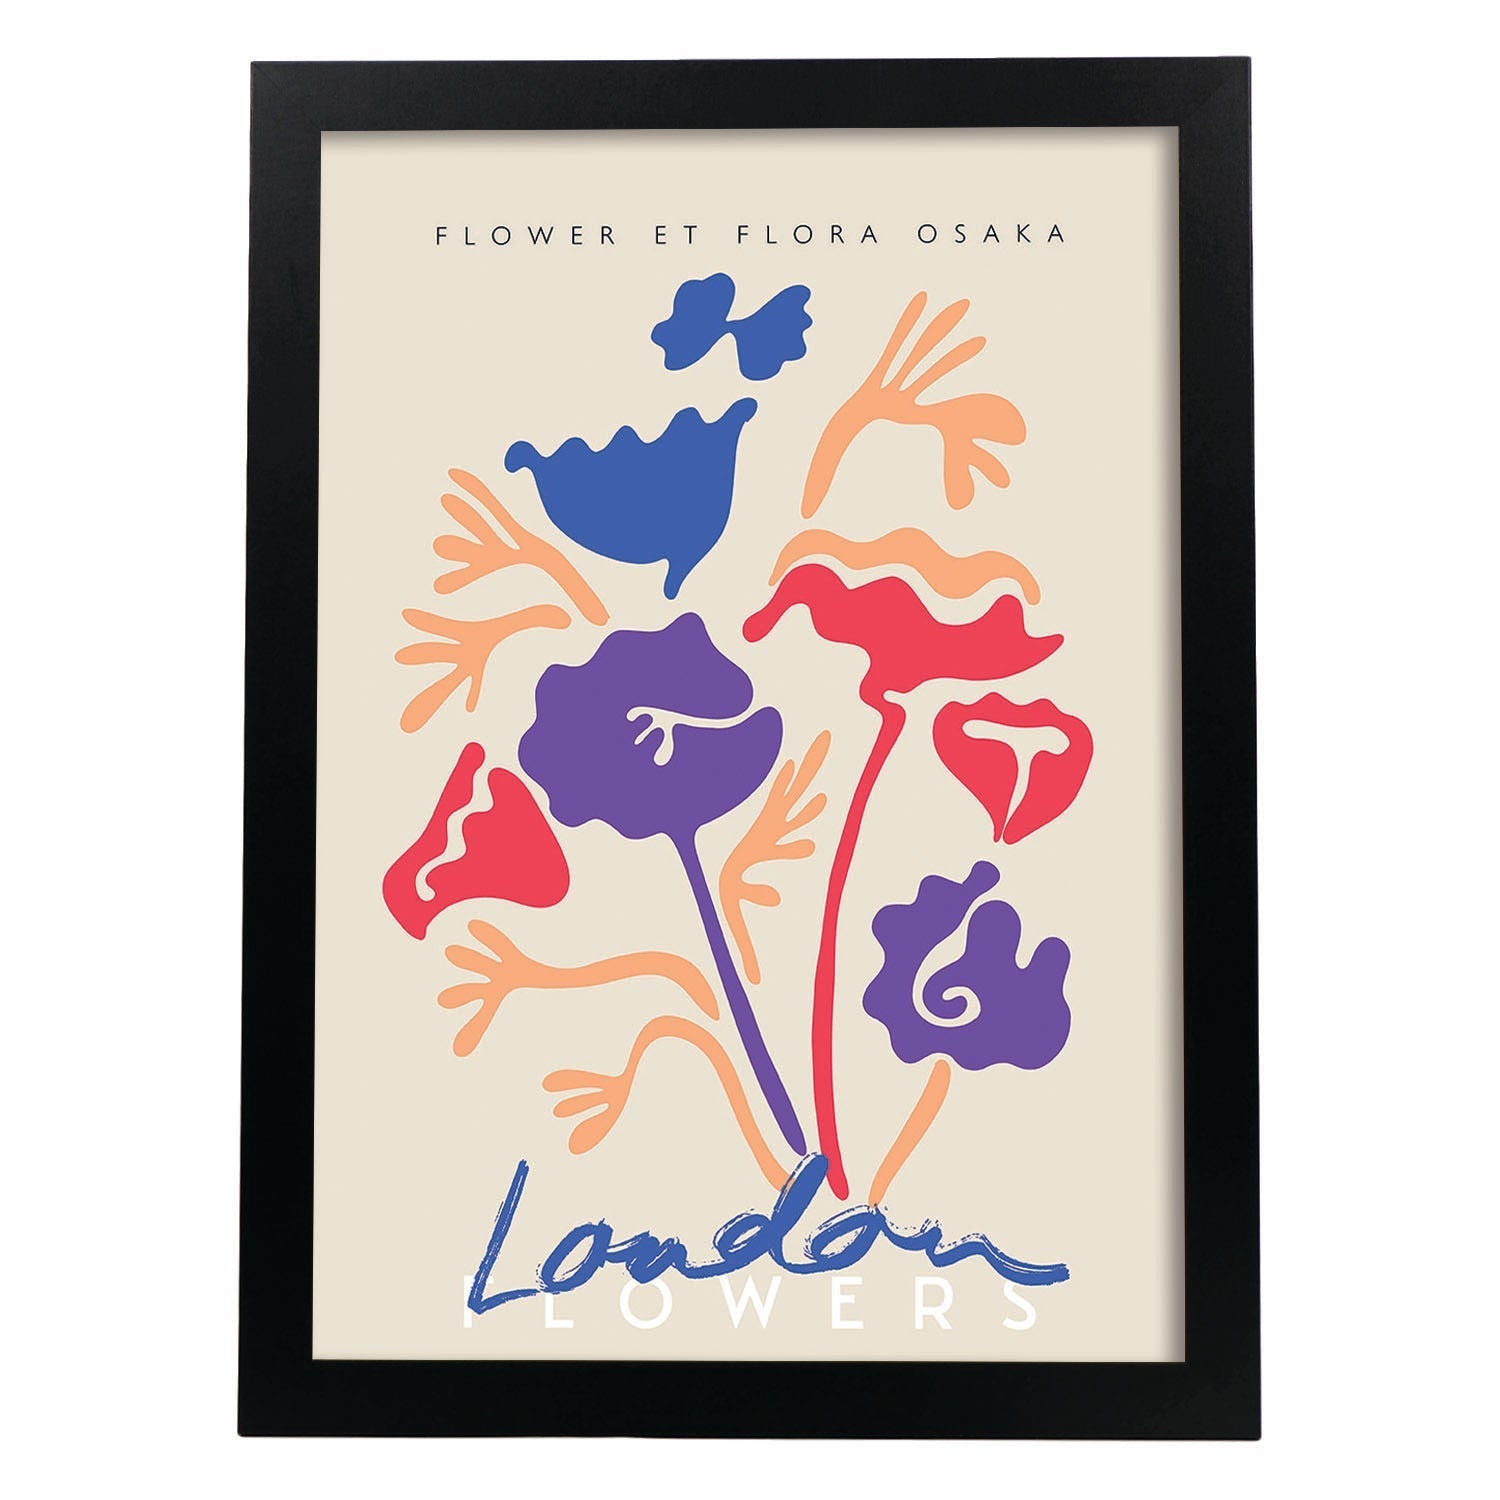 Lamina artistica decorativa con ilustración de Flores de Londres-Artwork-Nacnic-A4-Marco Negro-Nacnic Estudio SL